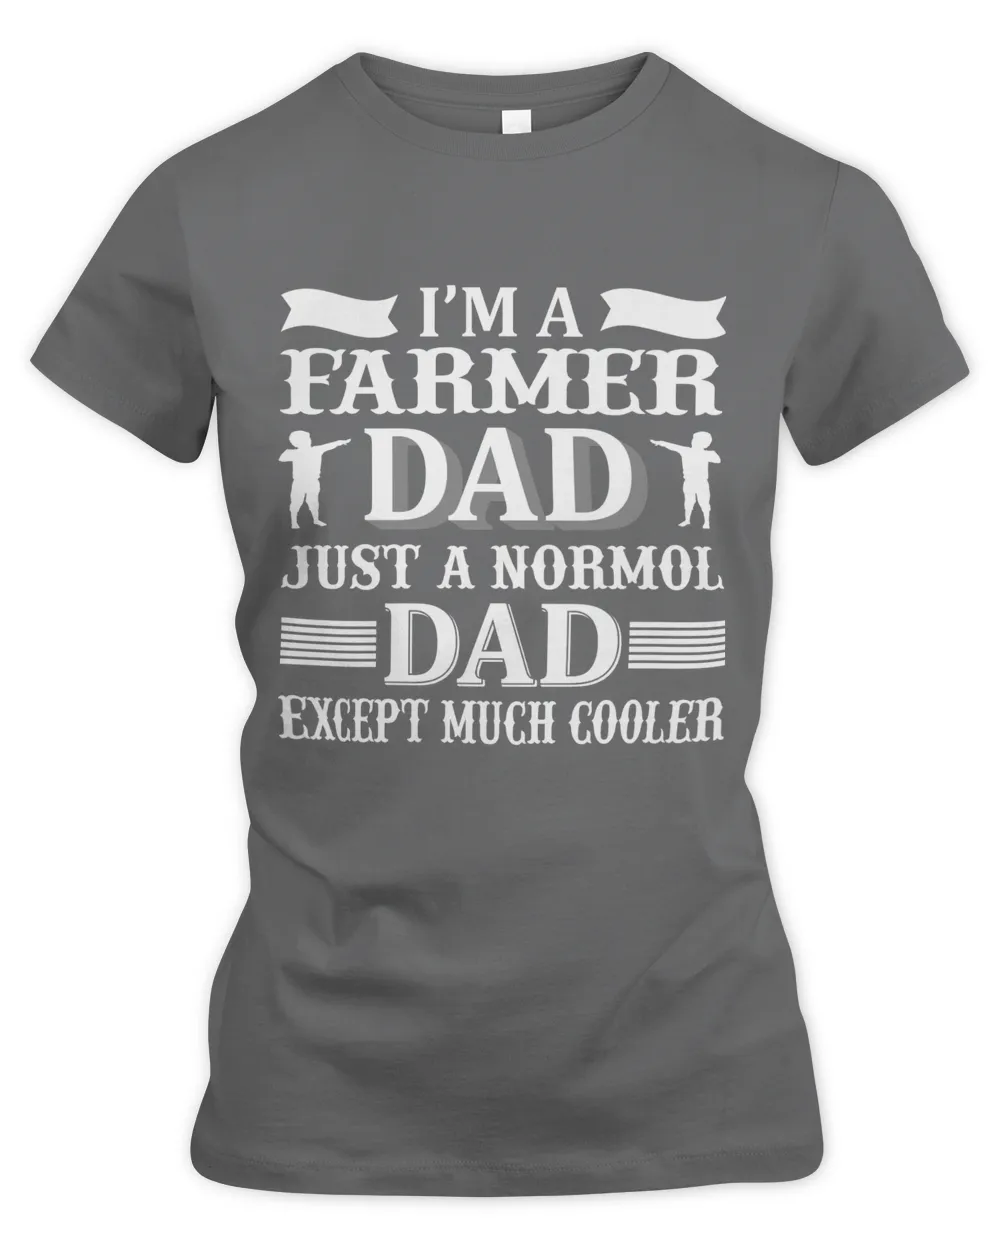 Father's Day Gifts, Father's Day Shirts, Father's Day Gift Ideas, Father's Day Gifts 2022, Gifts for Dad (79)